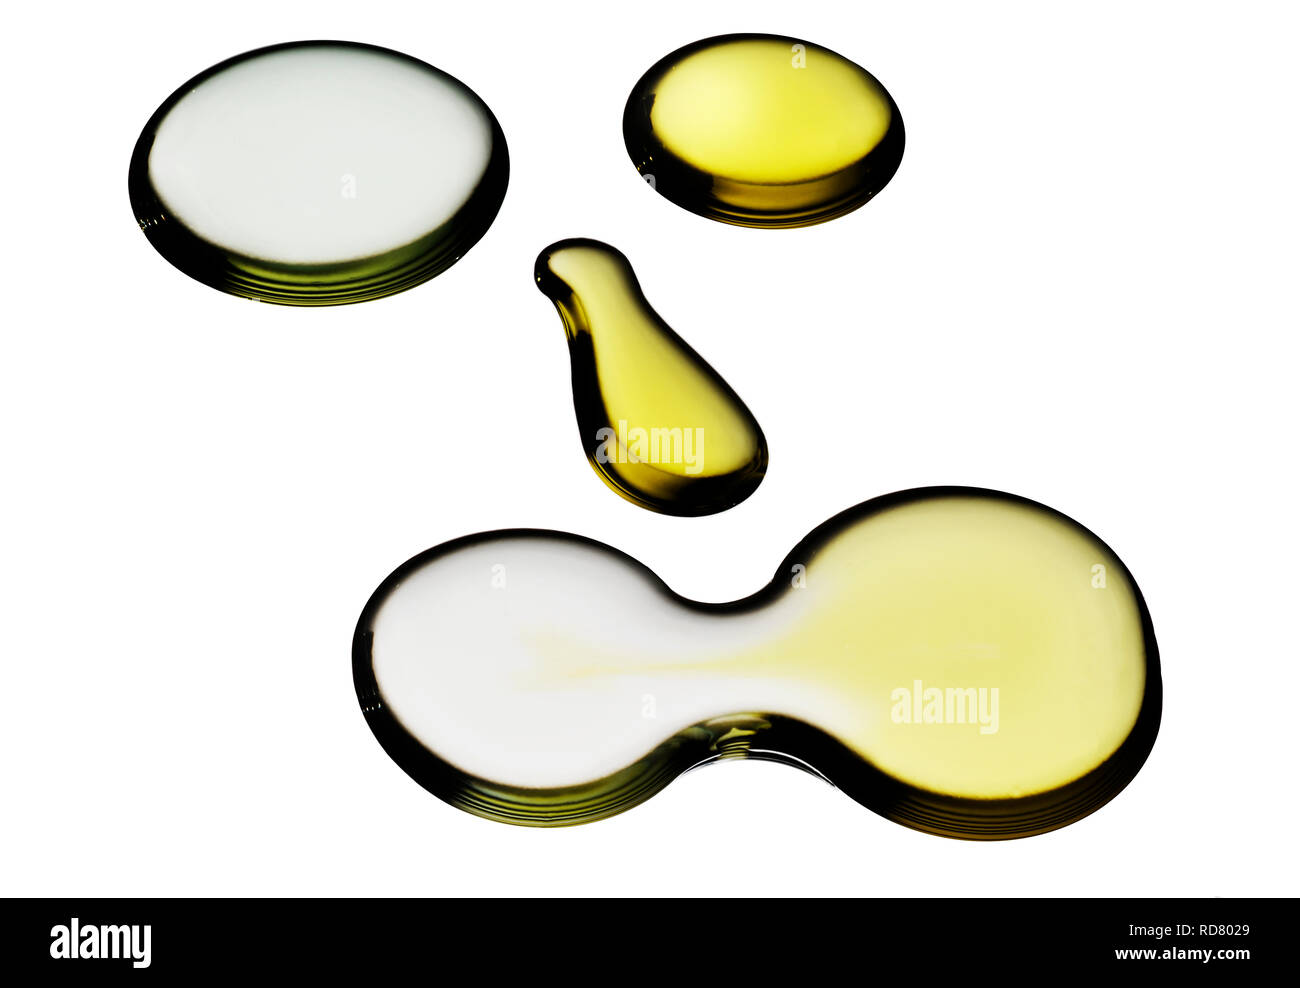 Los pedazos de vidrio en tonos de color amarillo sobre fondo blanco. Foto de stock